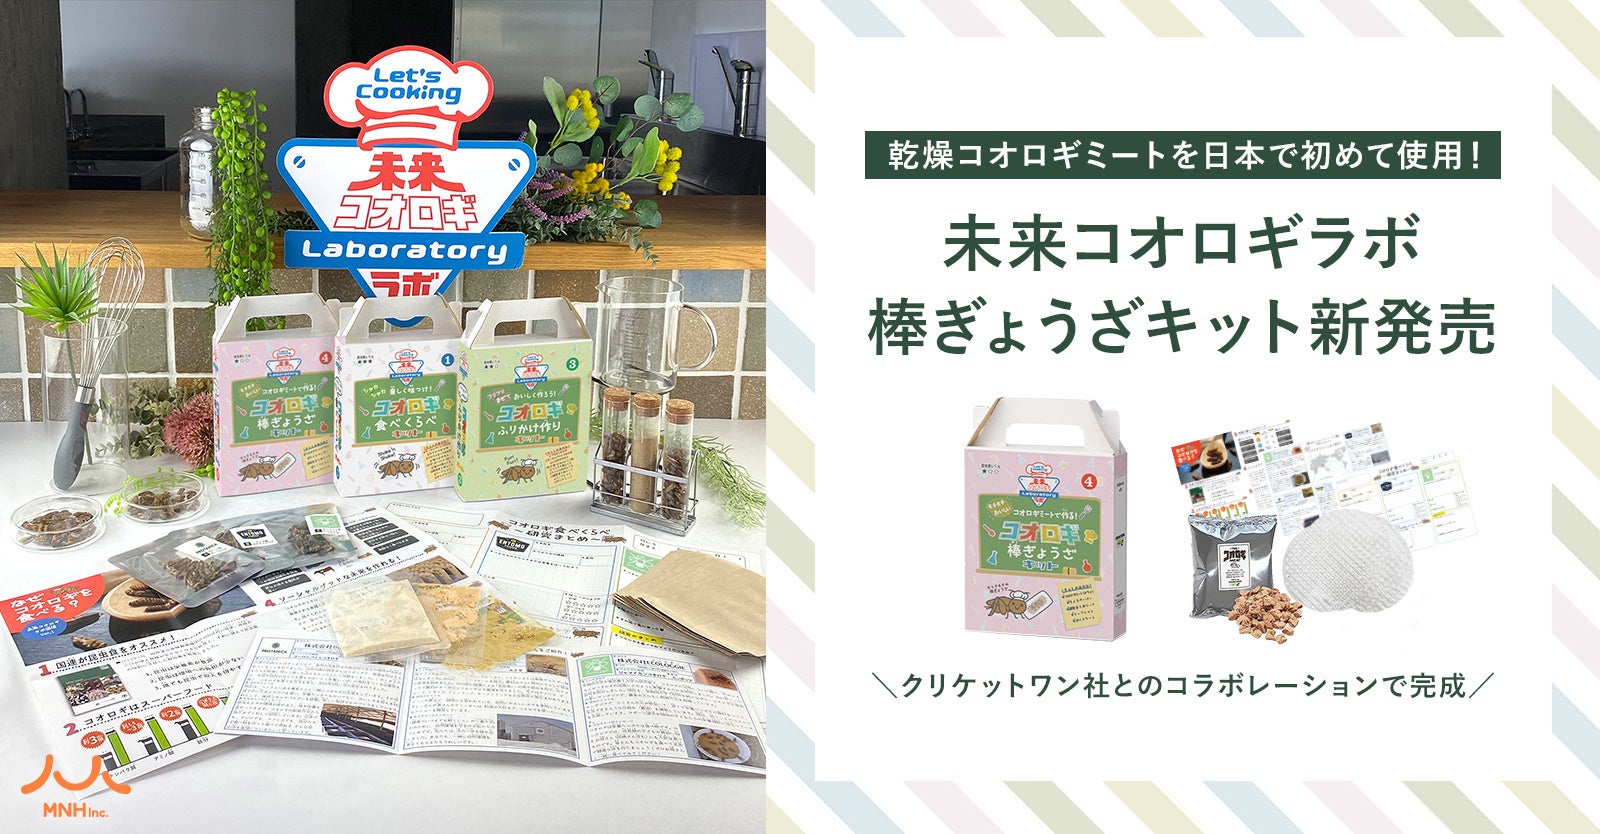 乾燥コオロギミートを日本で初めて使用！コオロギの新たな可能性を探る「未来コオロギラボ棒ぎょうざキット」が新発売